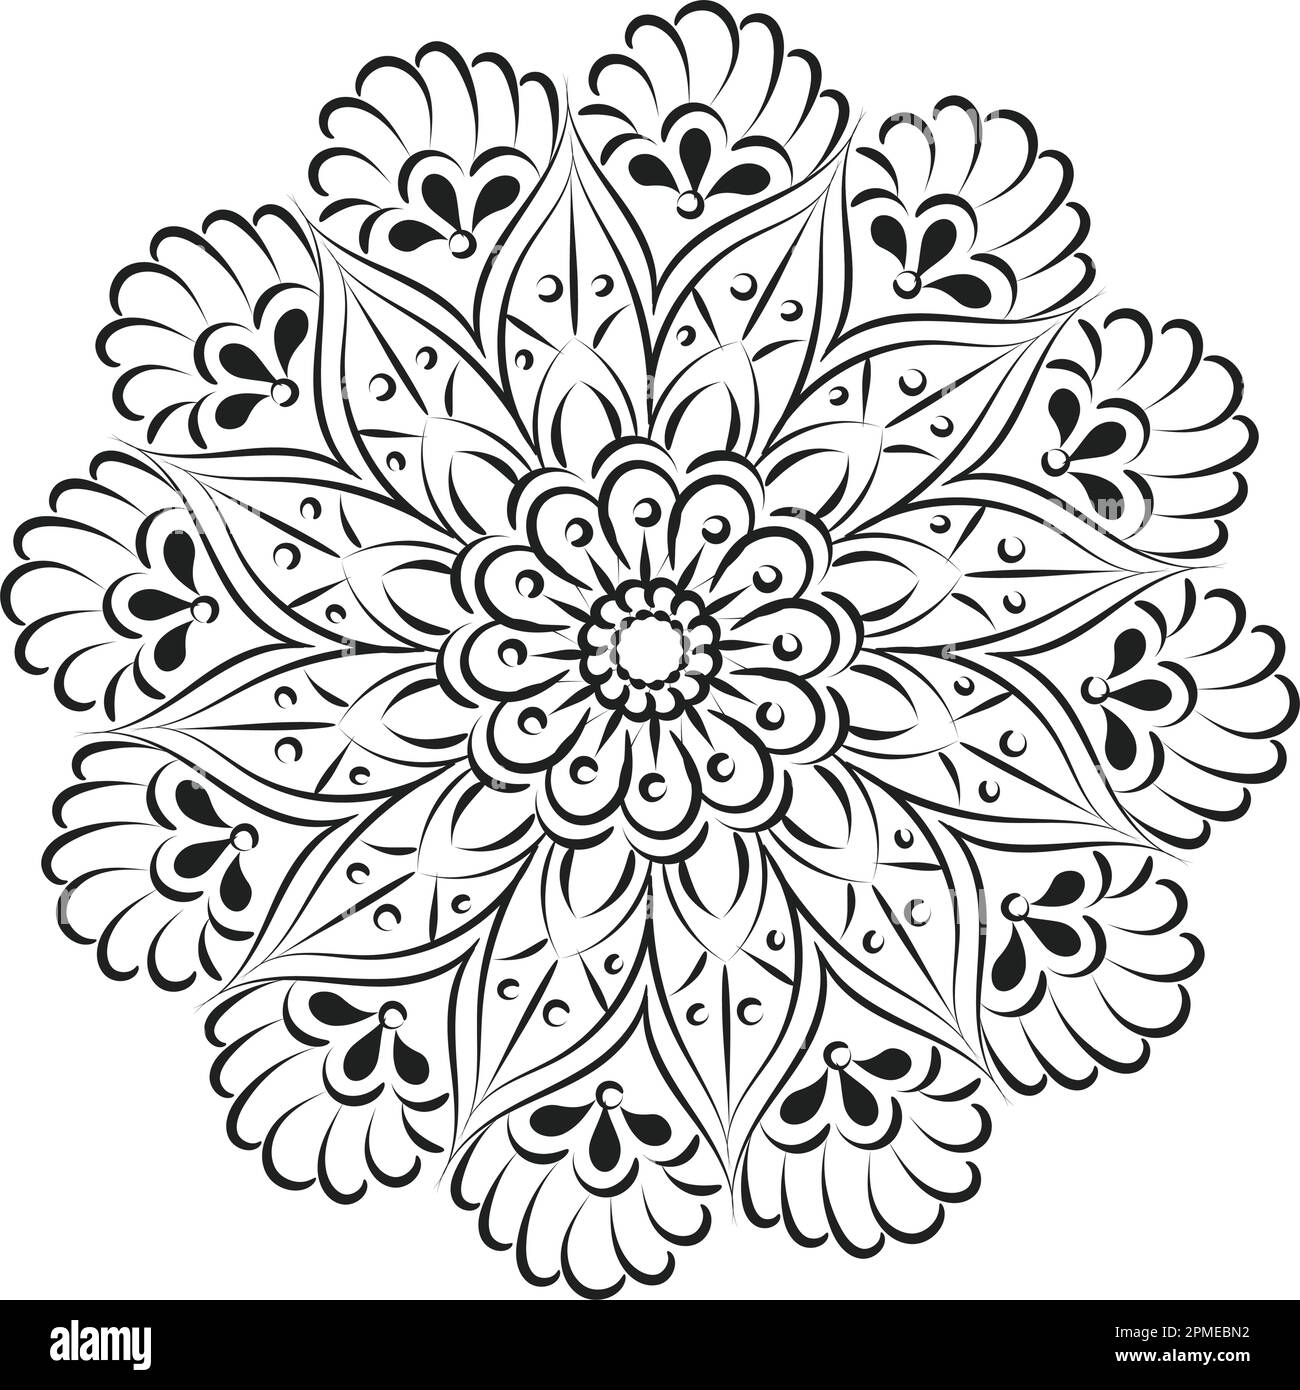 https://c8.alamy.com/comp/2PMEBN2/mandala-art-design-in-circle-simple-mandala-design-floral-mandala-art-beautiful-mandala-artwork-2PMEBN2.jpg